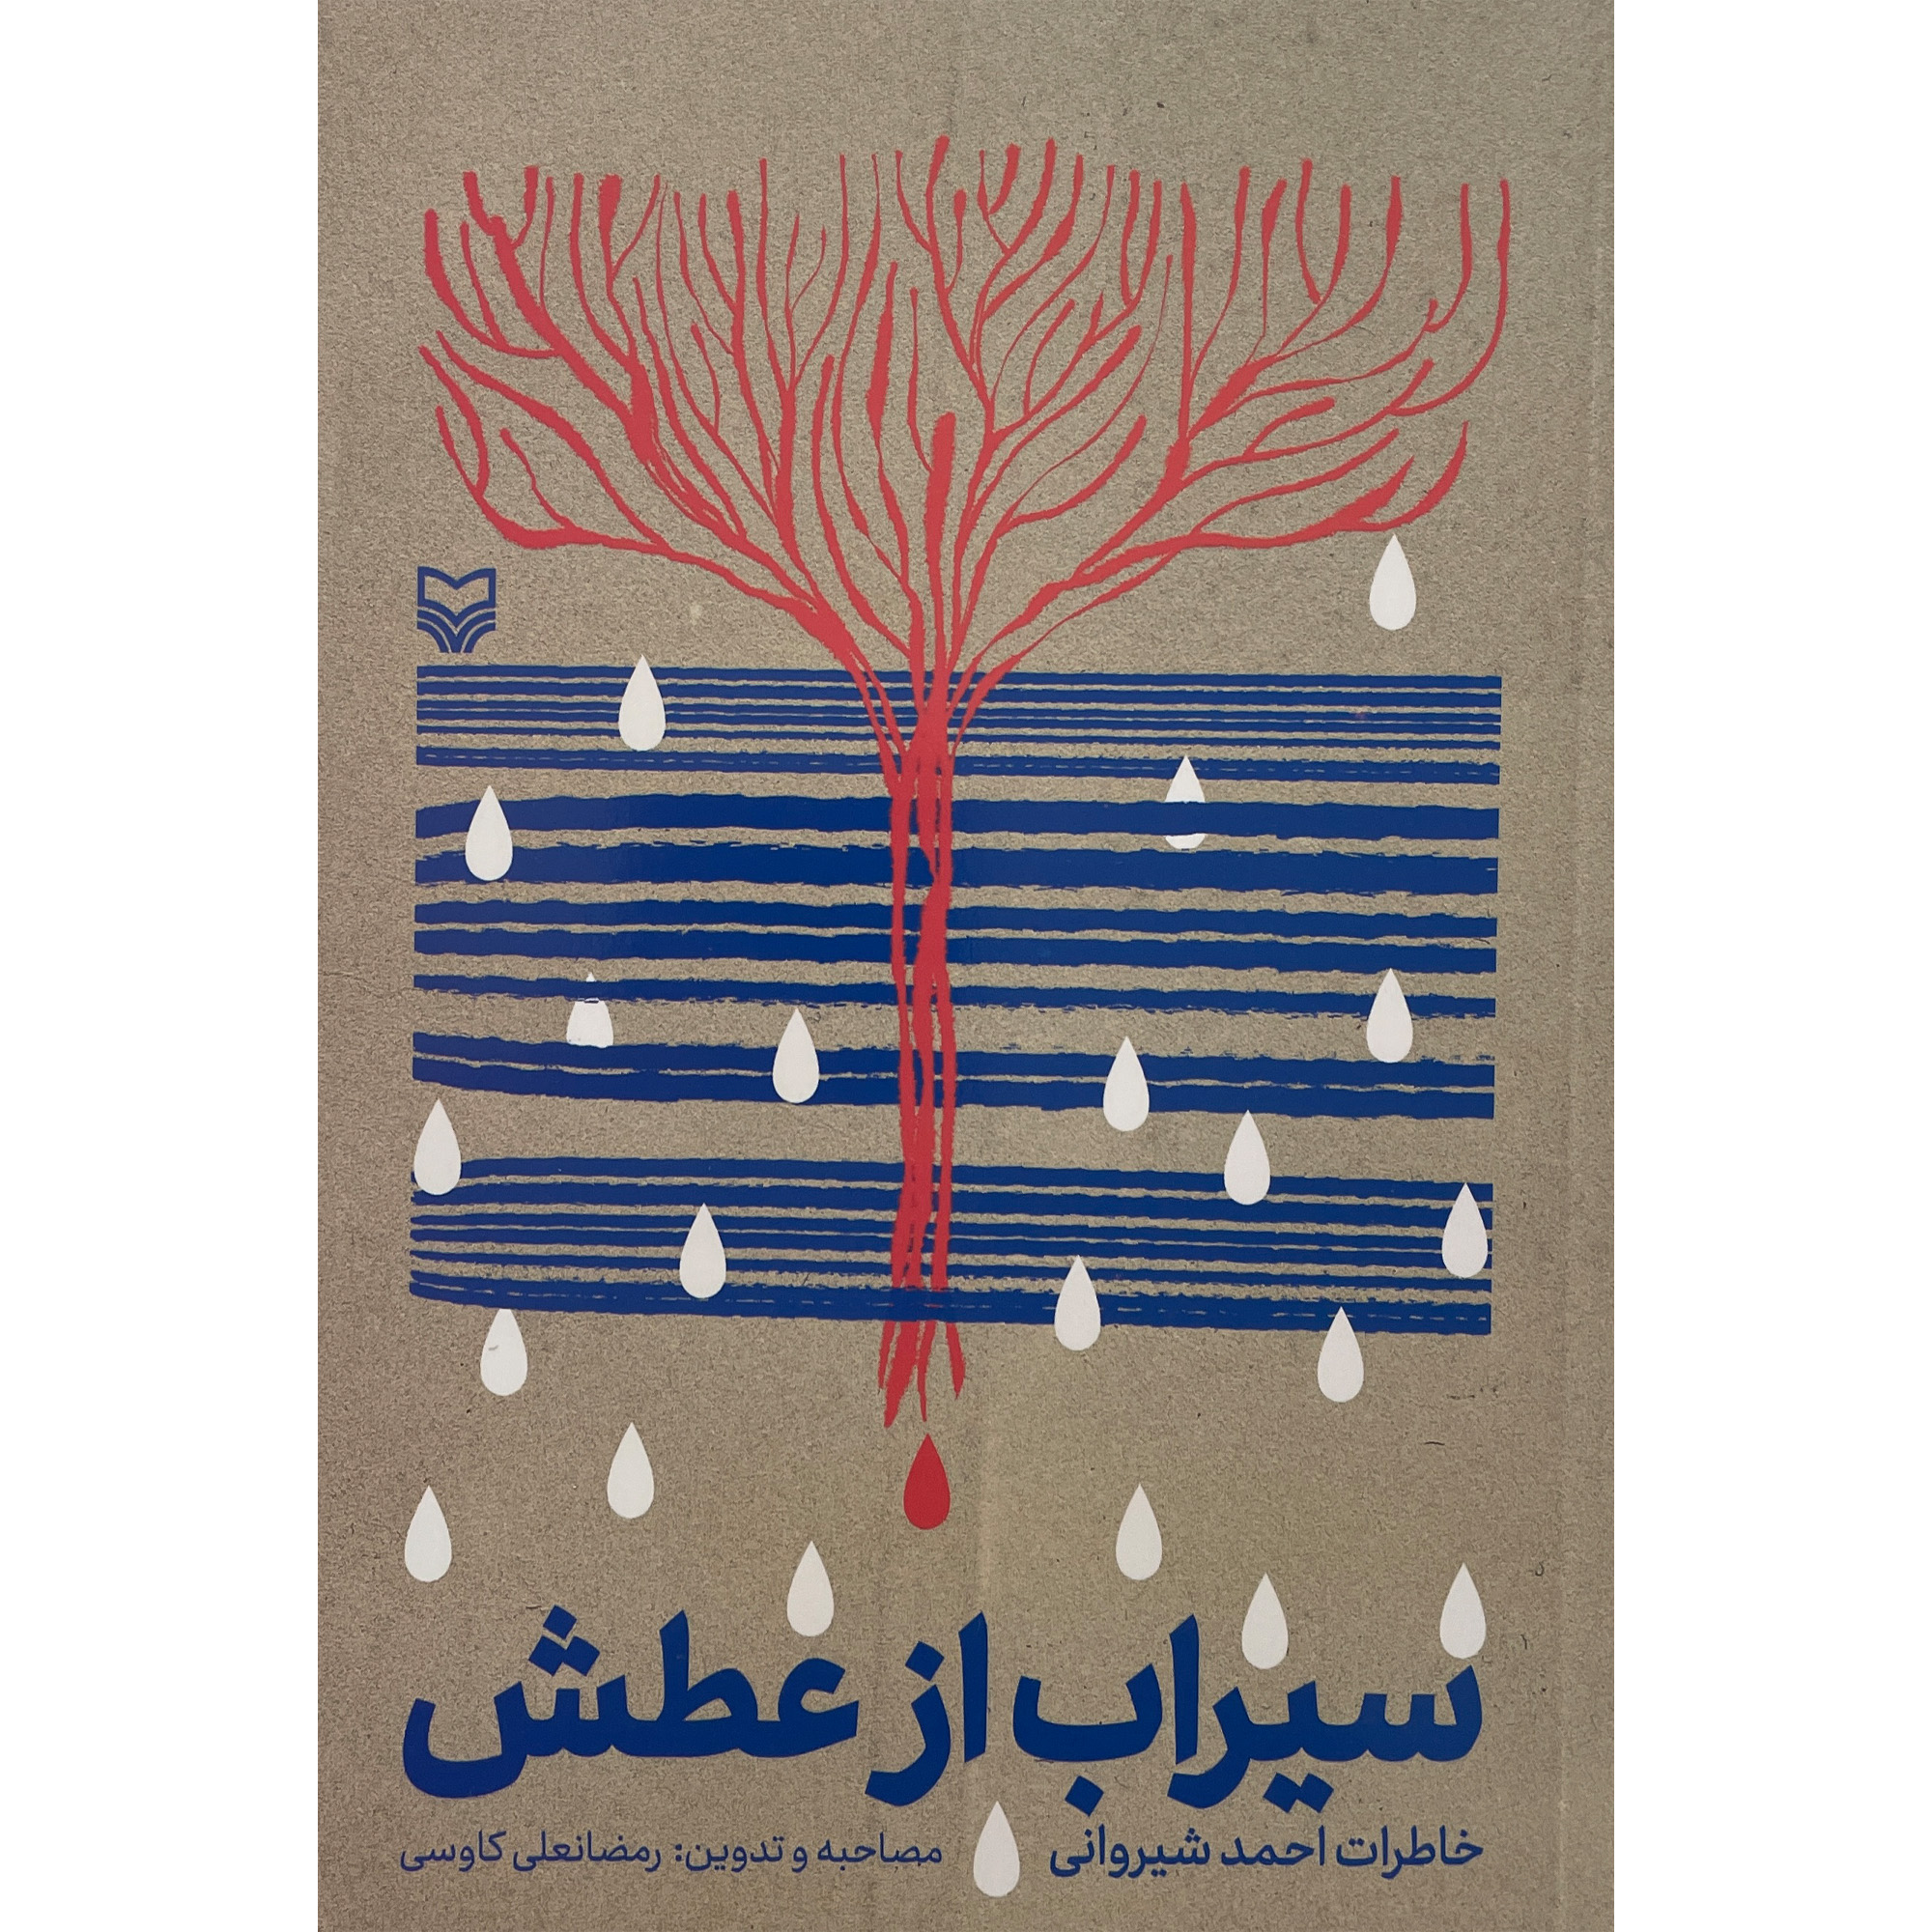 کتاب سيراب از عطش اثر رمضانعلی كاوسی انتشارات سوره مهر